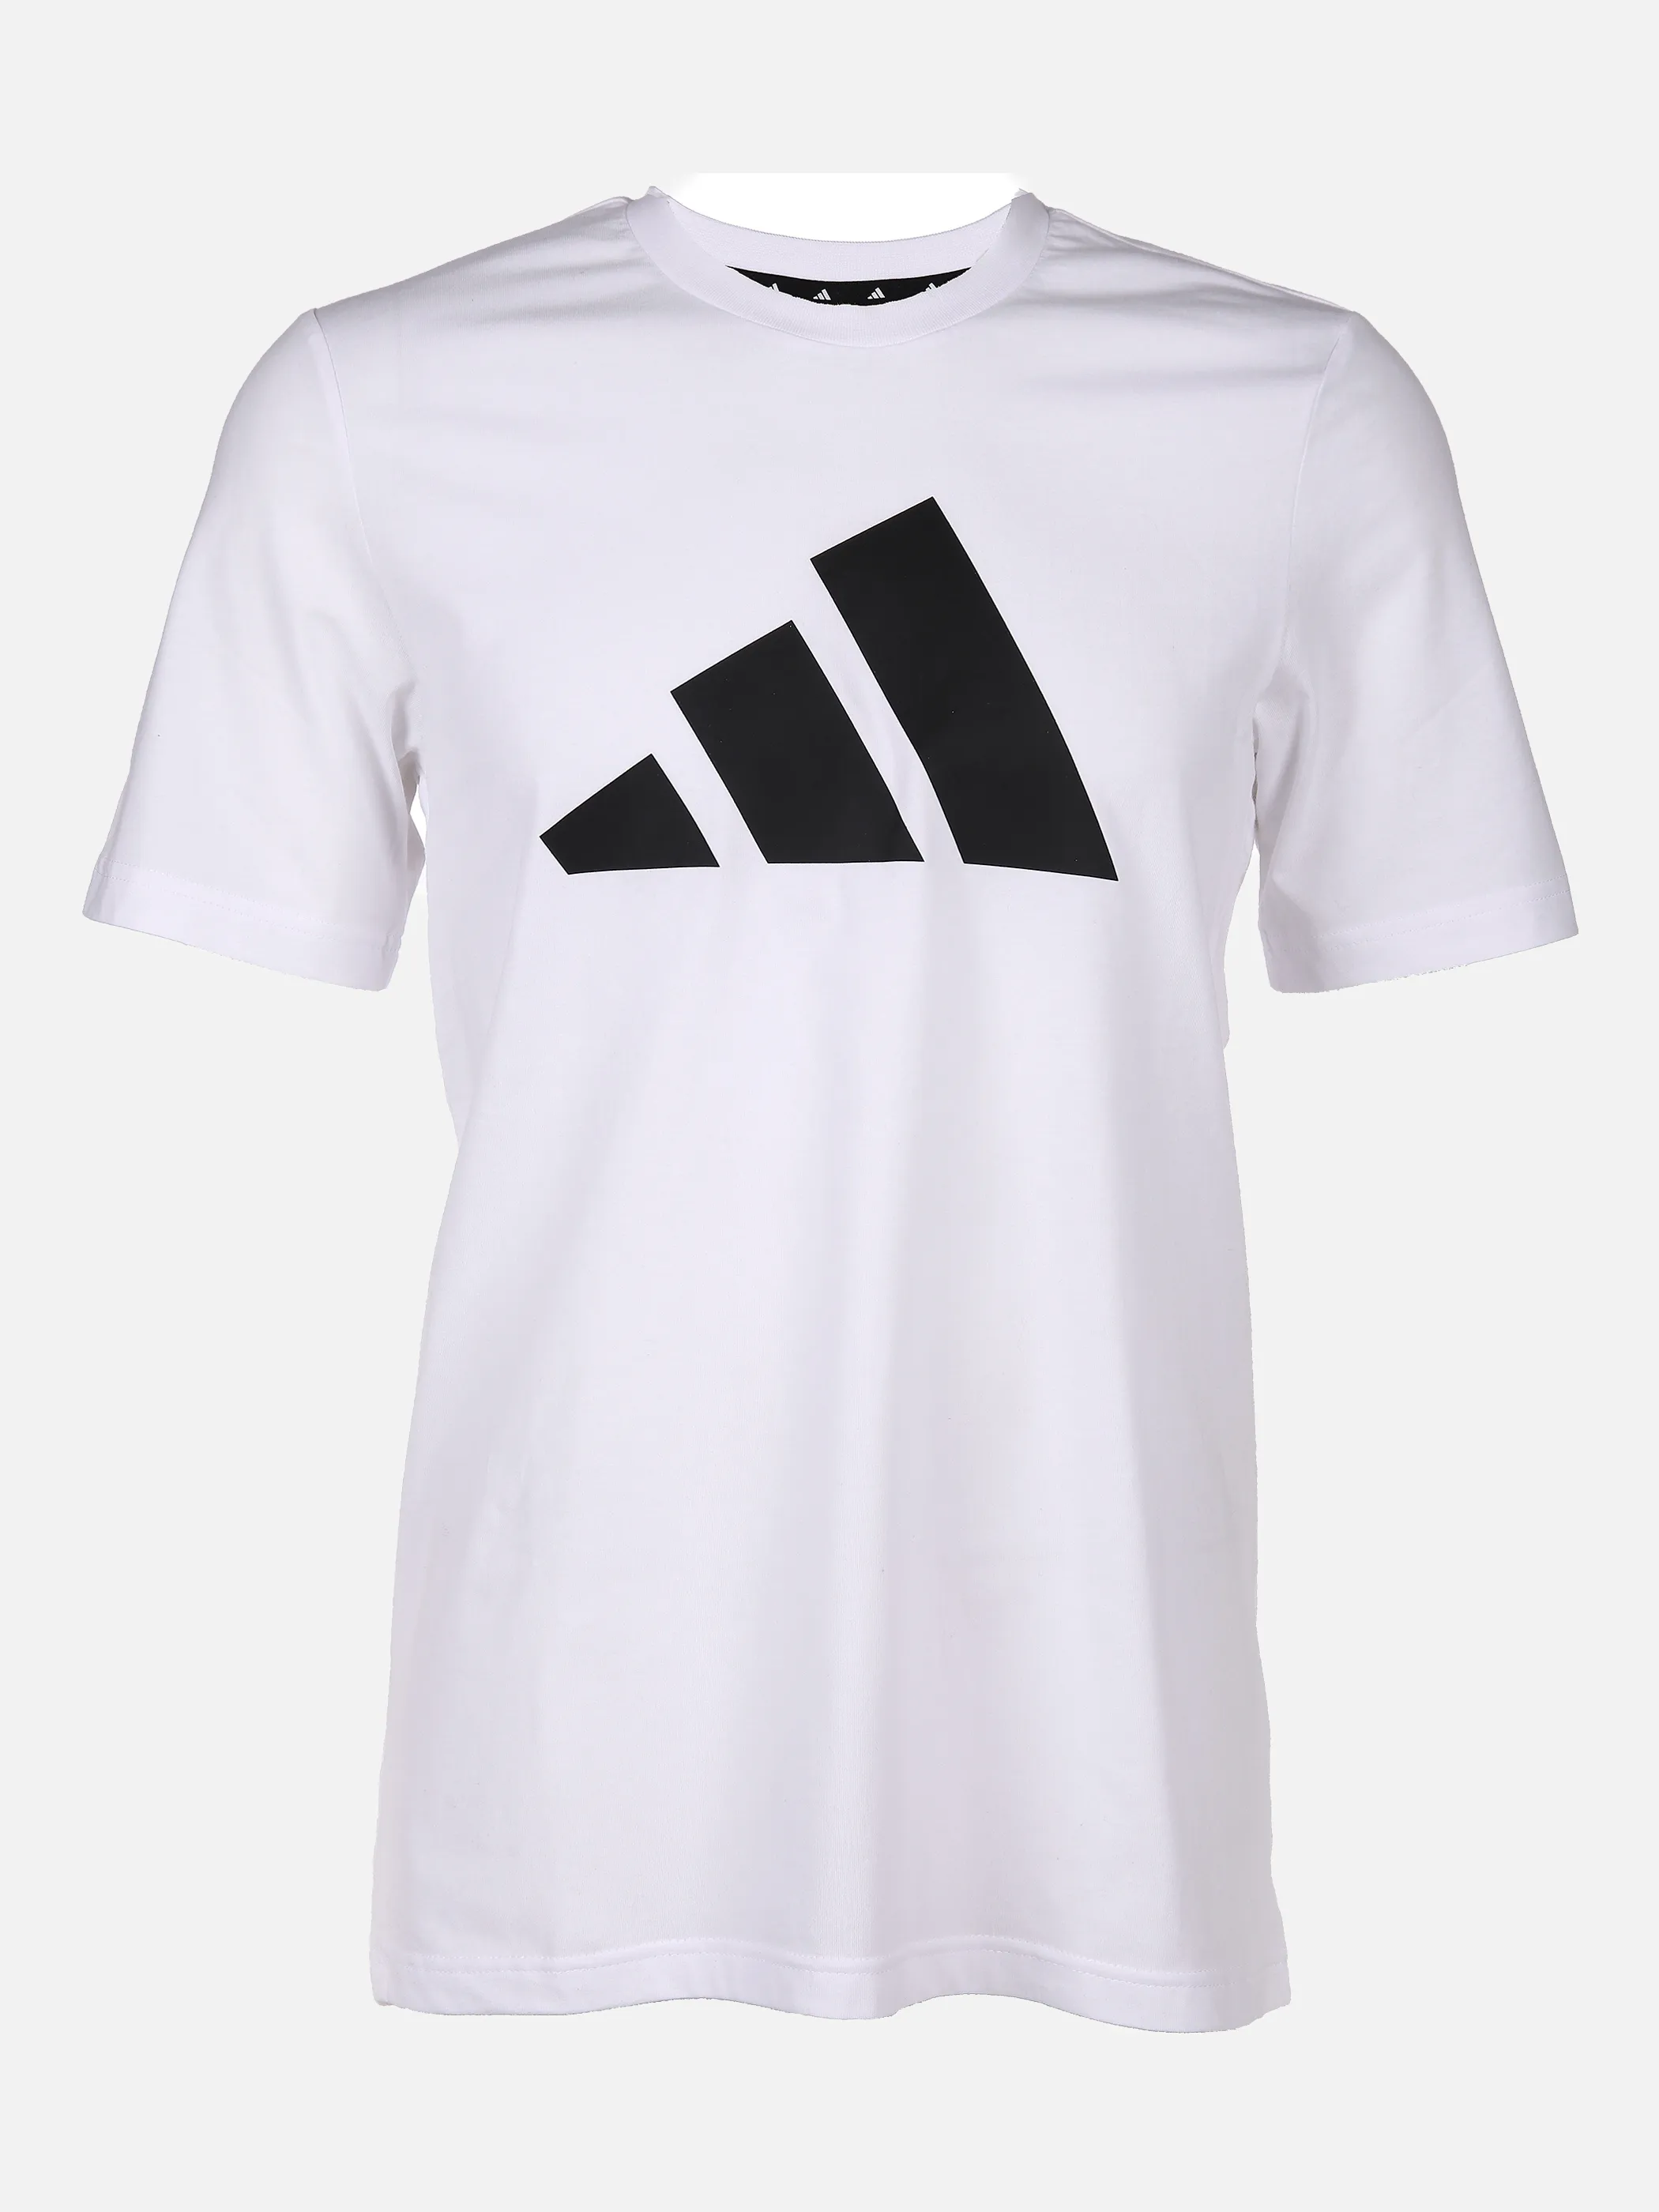 Herren Sport Shirt mit Logoprint | 001A | noSize | 845773-001a